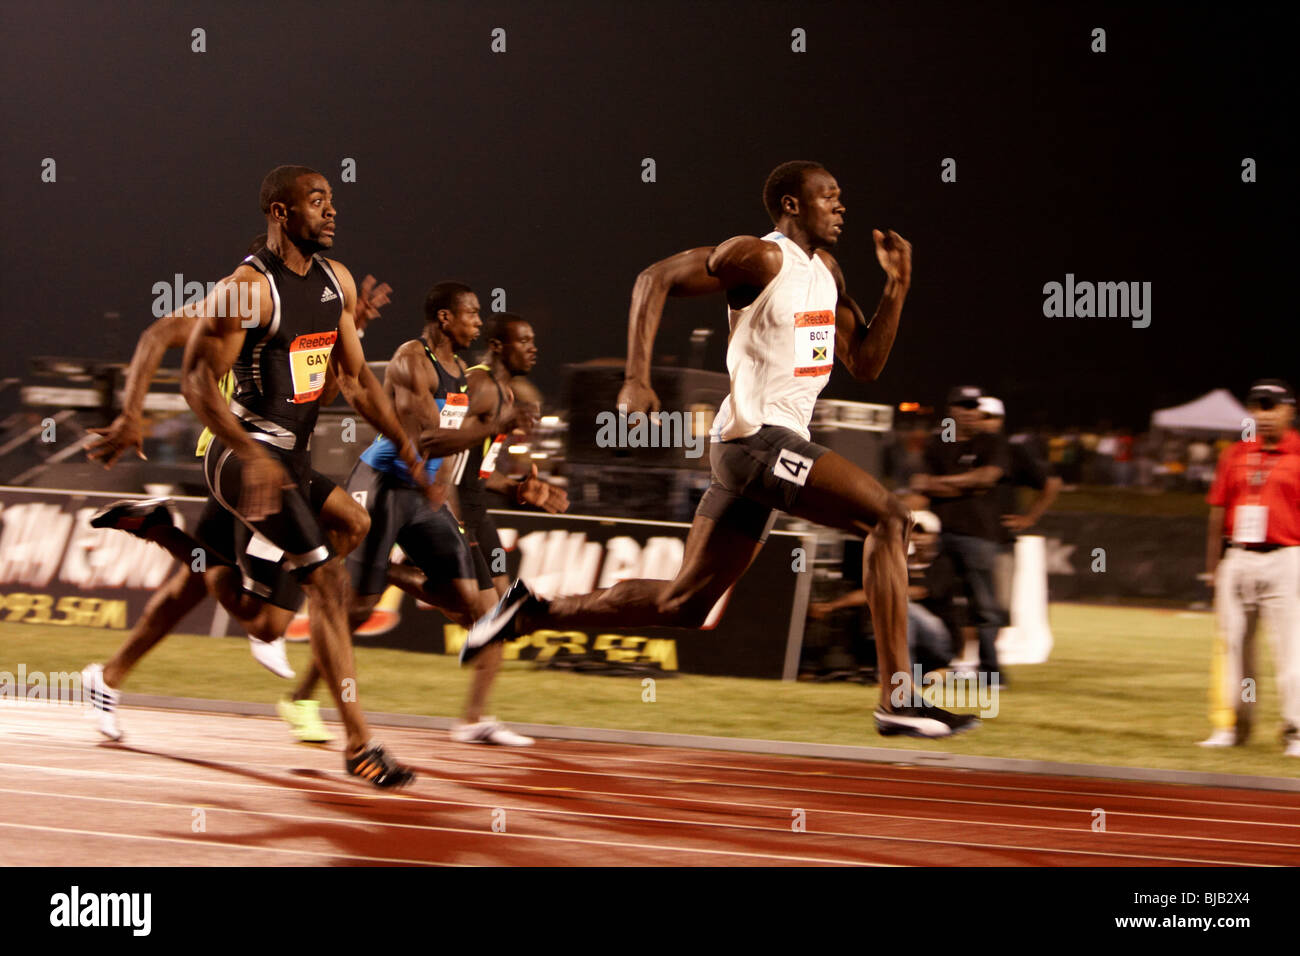 Jamaikas Usain Bolt setzt einen neuen Weltrekord in der Herren-100m-Lauf  mit einer Zeit von 9,72 Sekunden Stockfotografie - Alamy